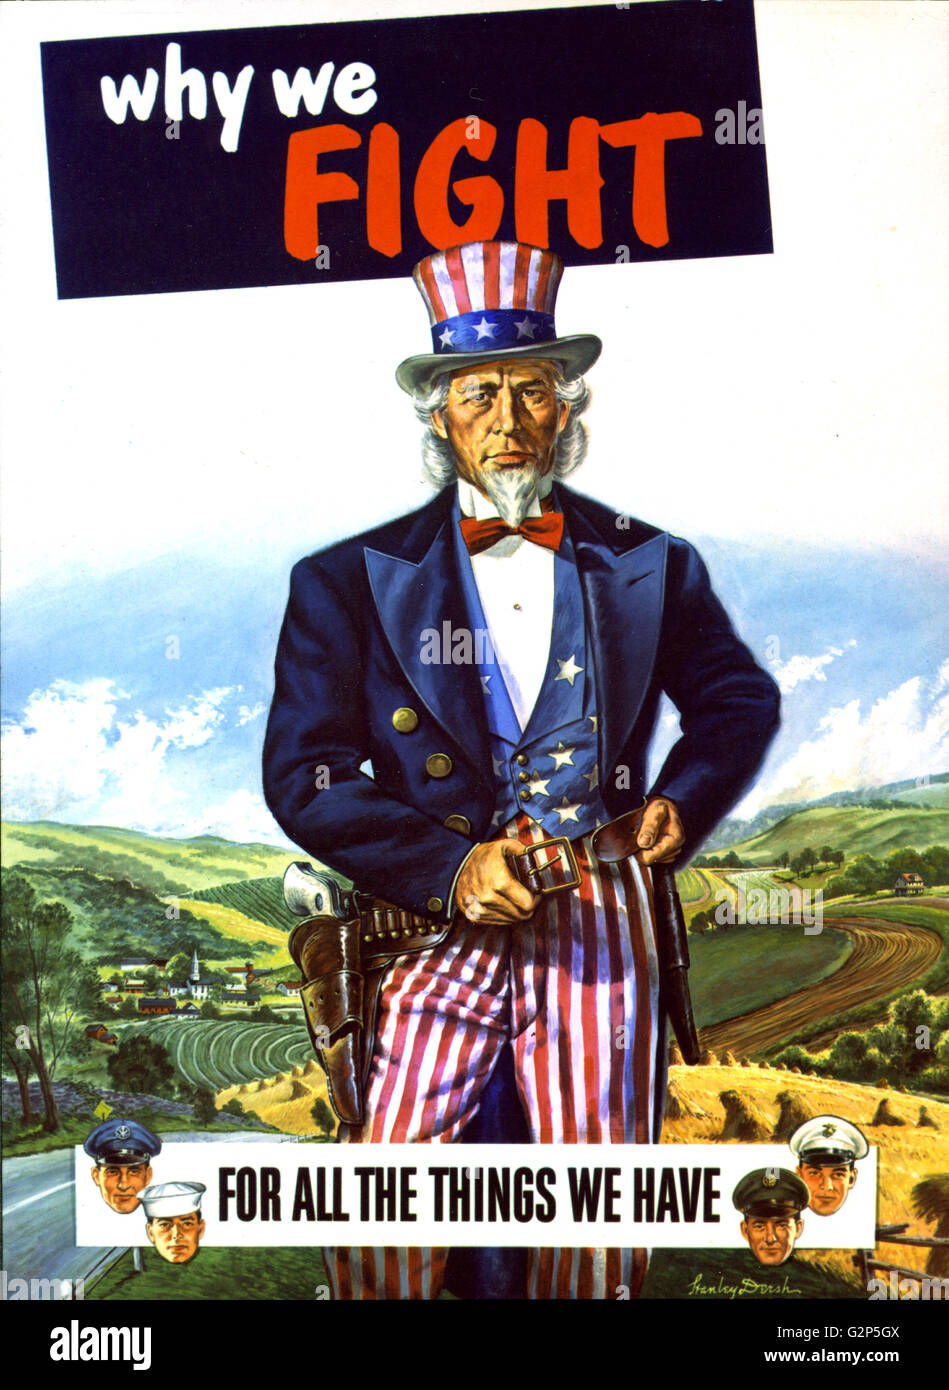 Nach dem zweiten Weltkrieg Plakat Malerei zeigt Uncle Sam, unterstützt von Männern aller Zweige des US-Militärs, bereit, um den American Way of Life zu verteidigen. Stanley Dersh, Künstler. Stockfoto